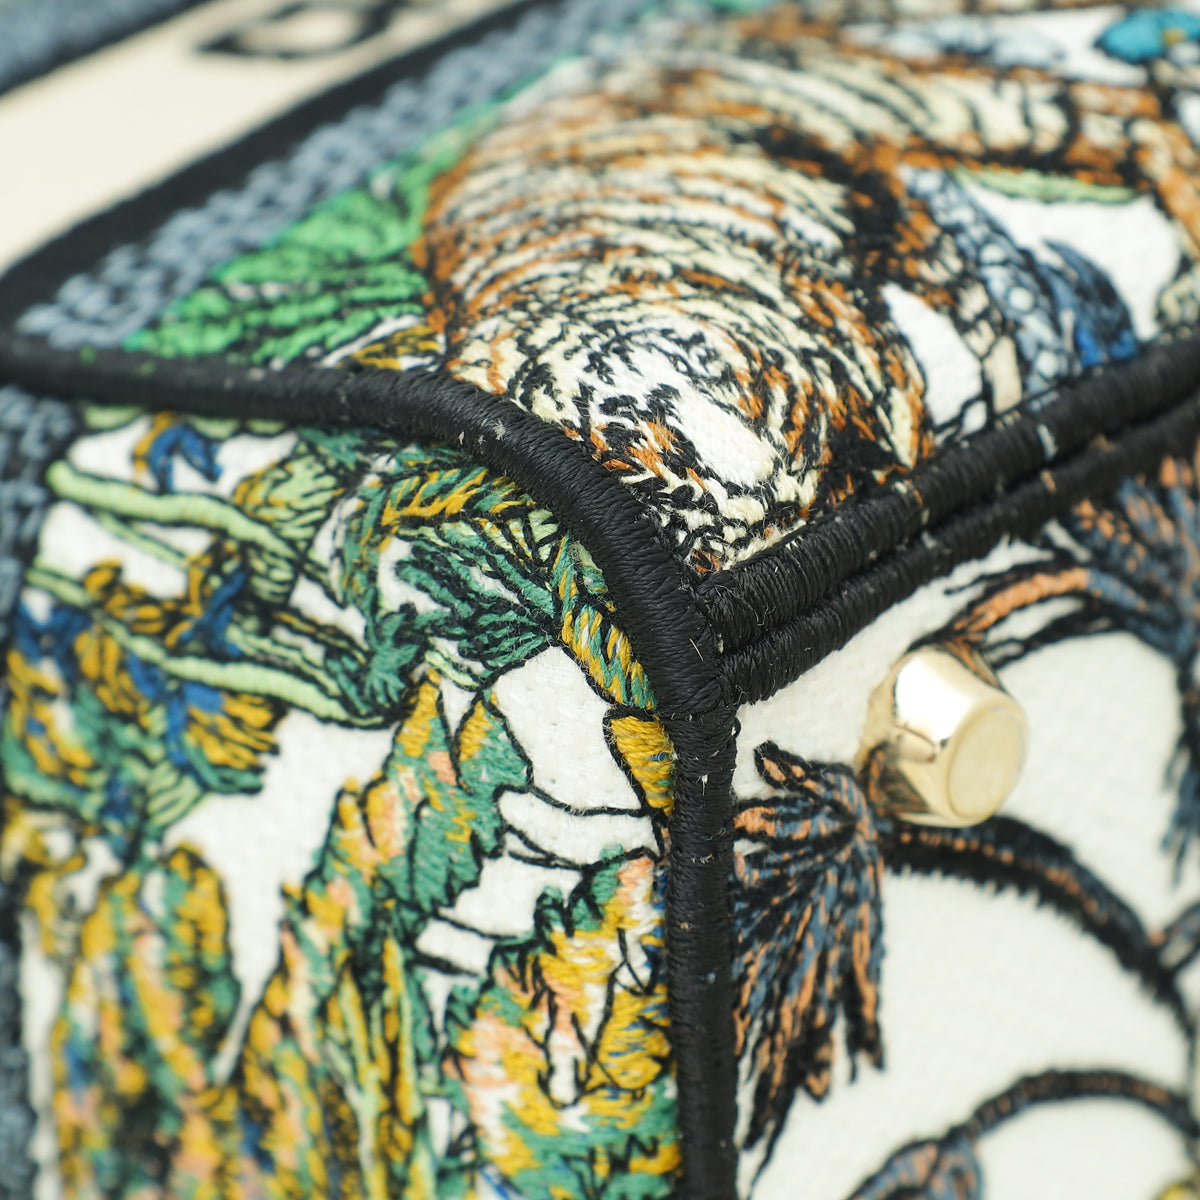 Christian Dior Multicolor Étoile de Voyage Embroidery Lady D-Lite Medium Bag